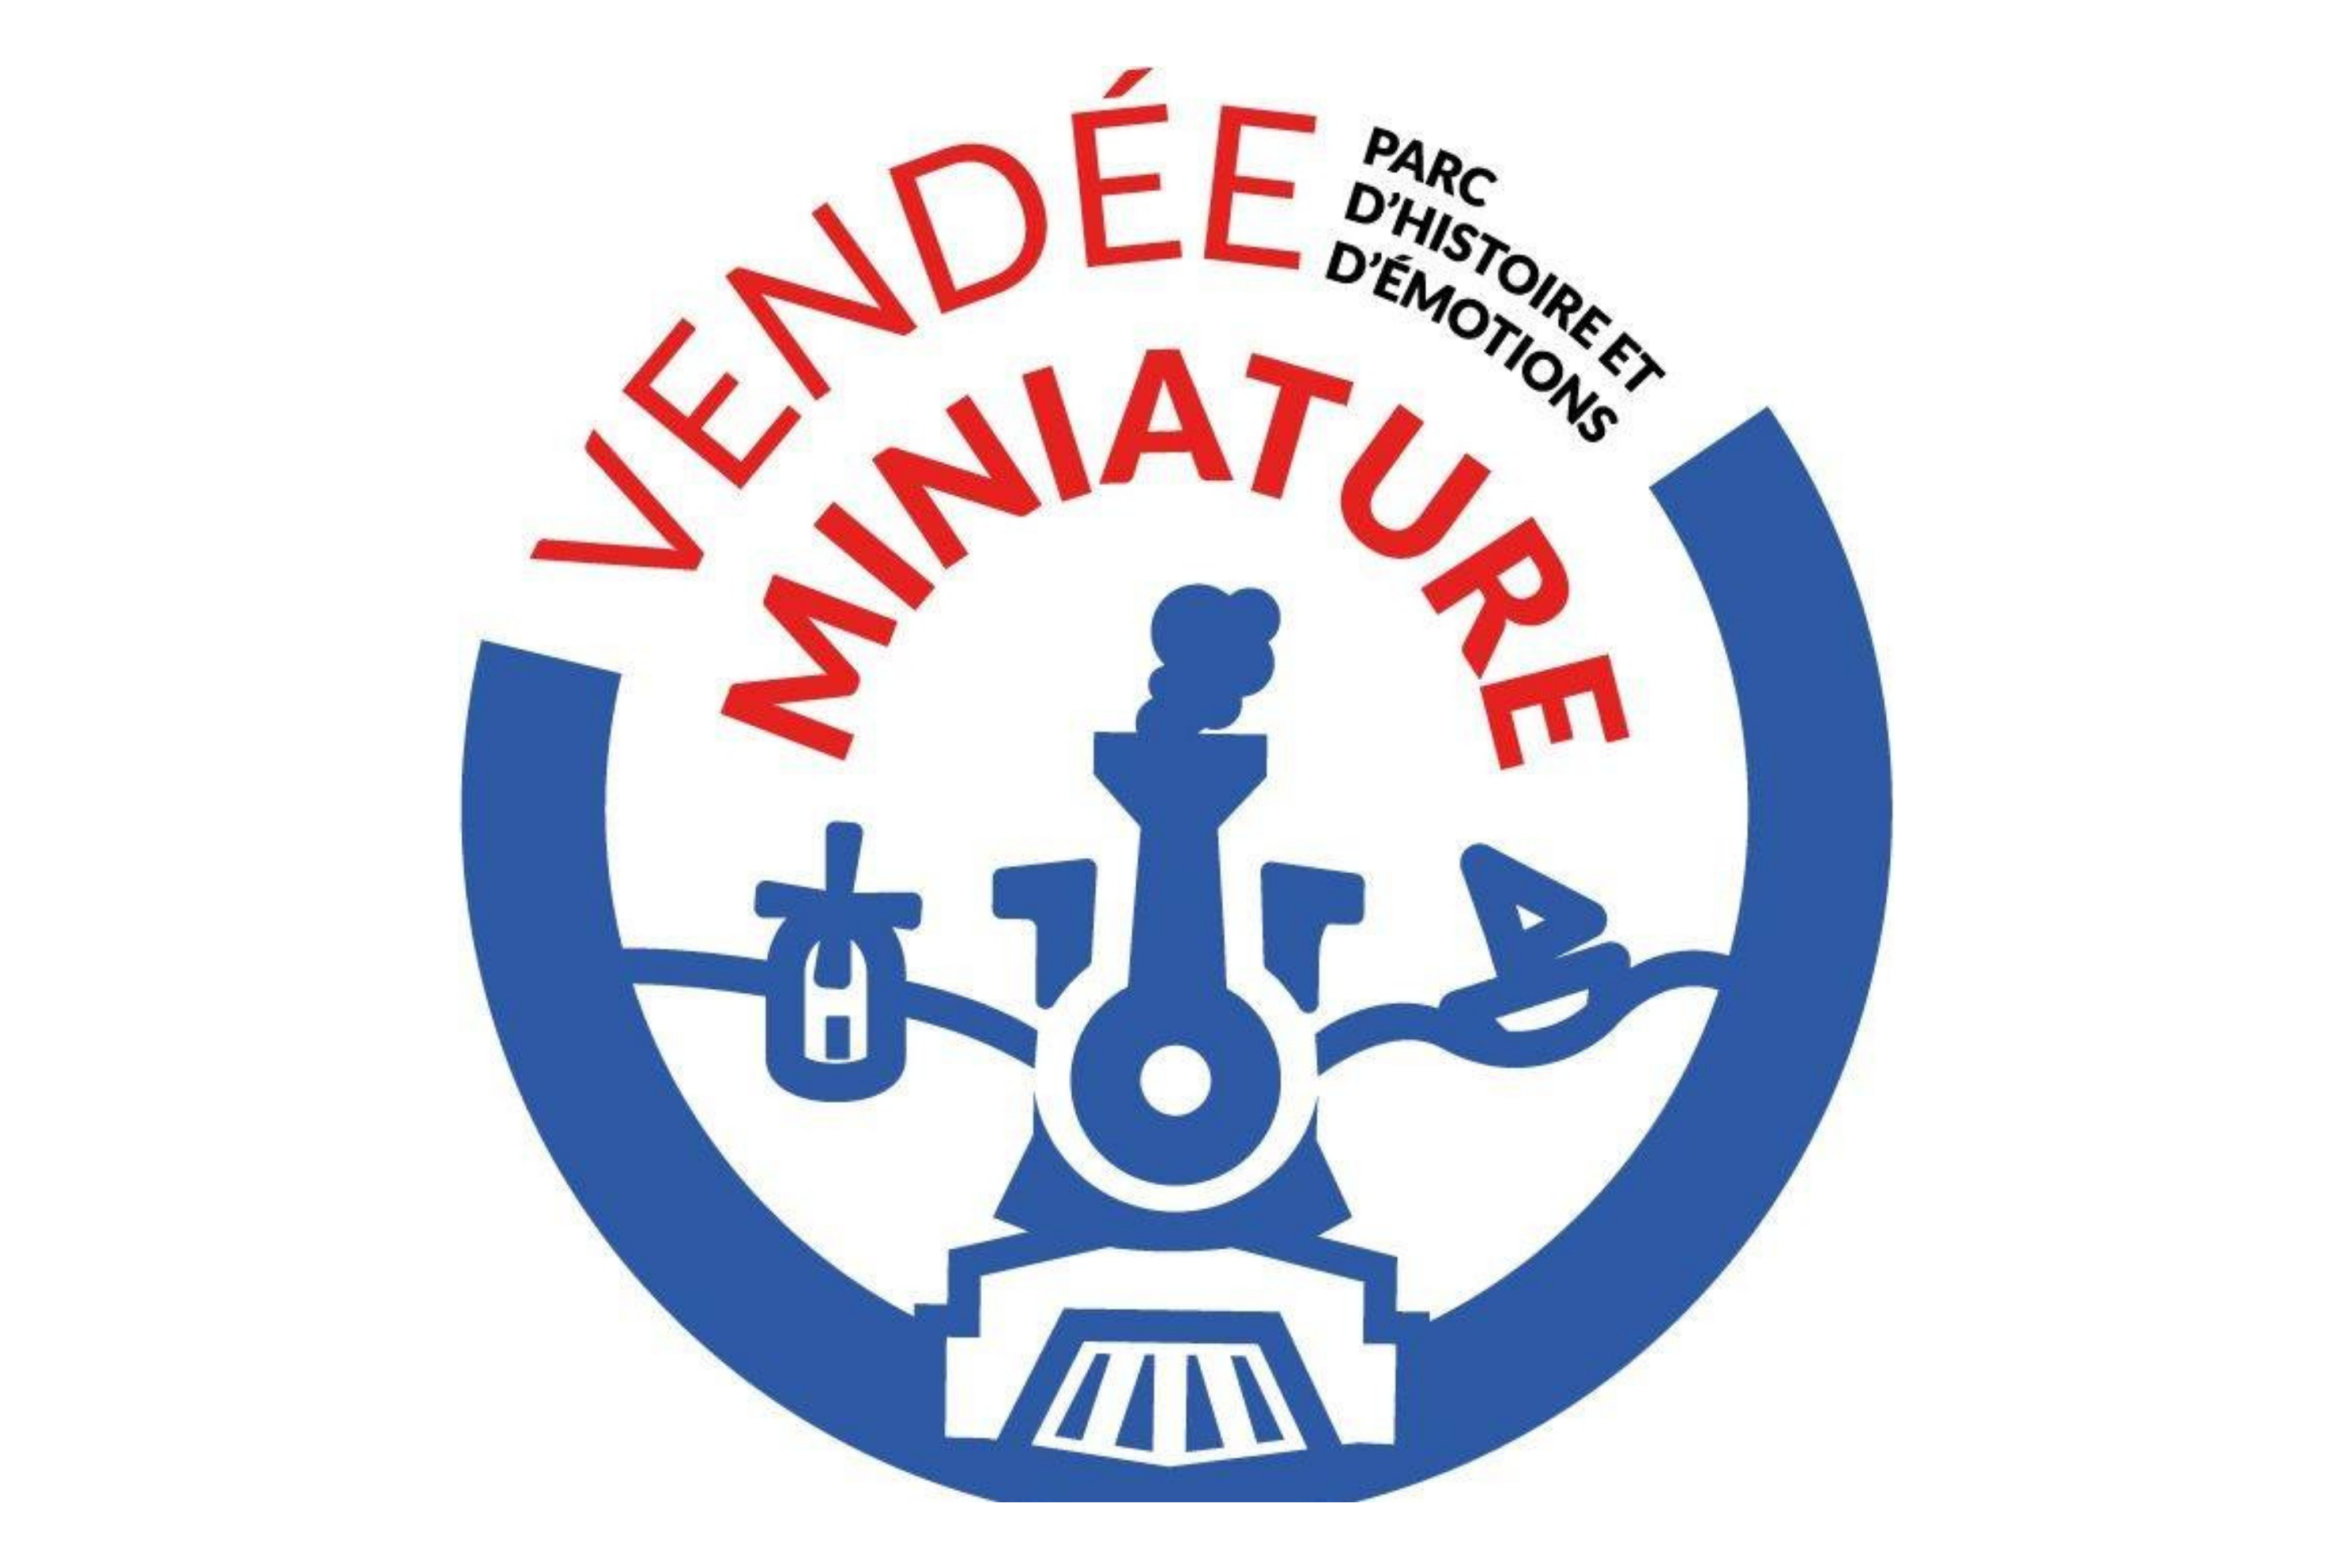 logo_vendeeminiature2